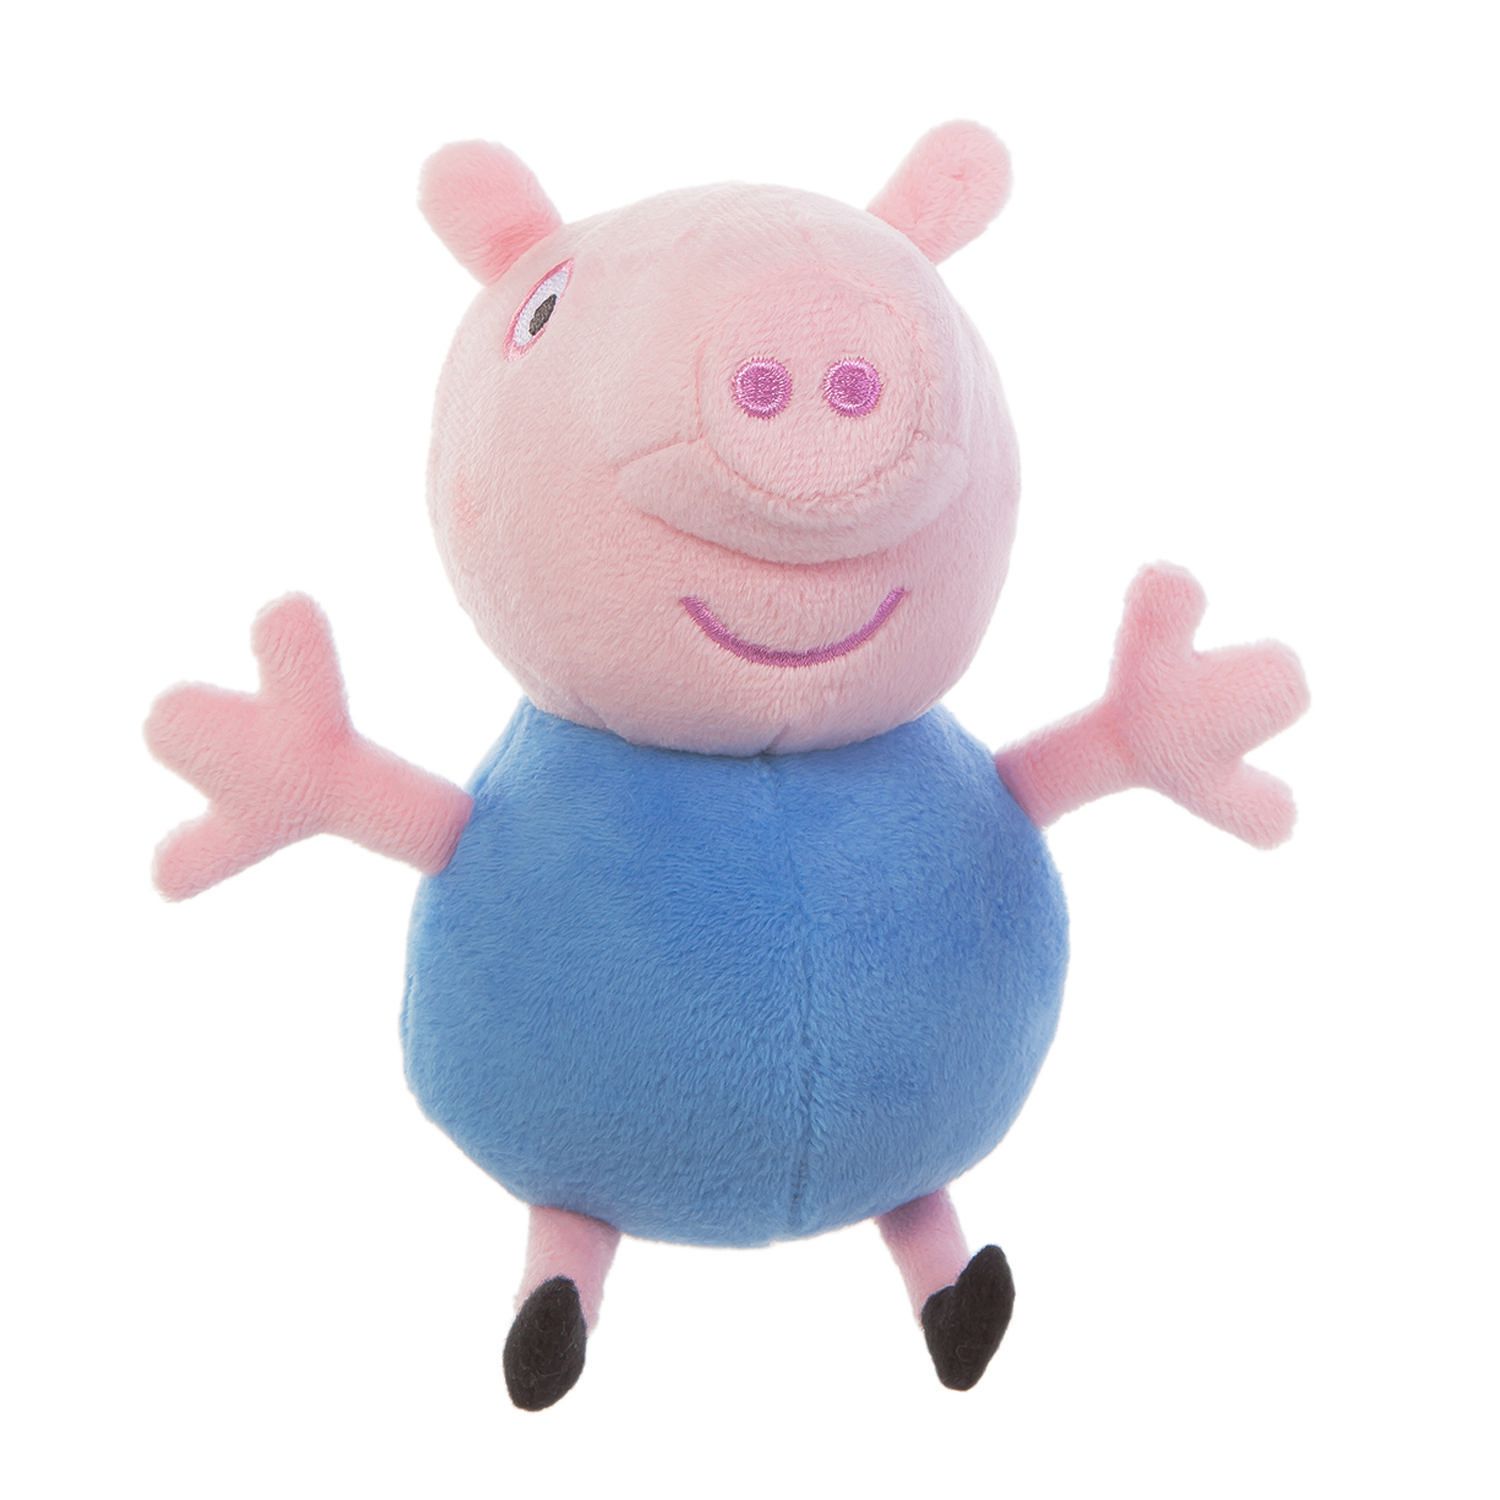 george pig stuffed animal